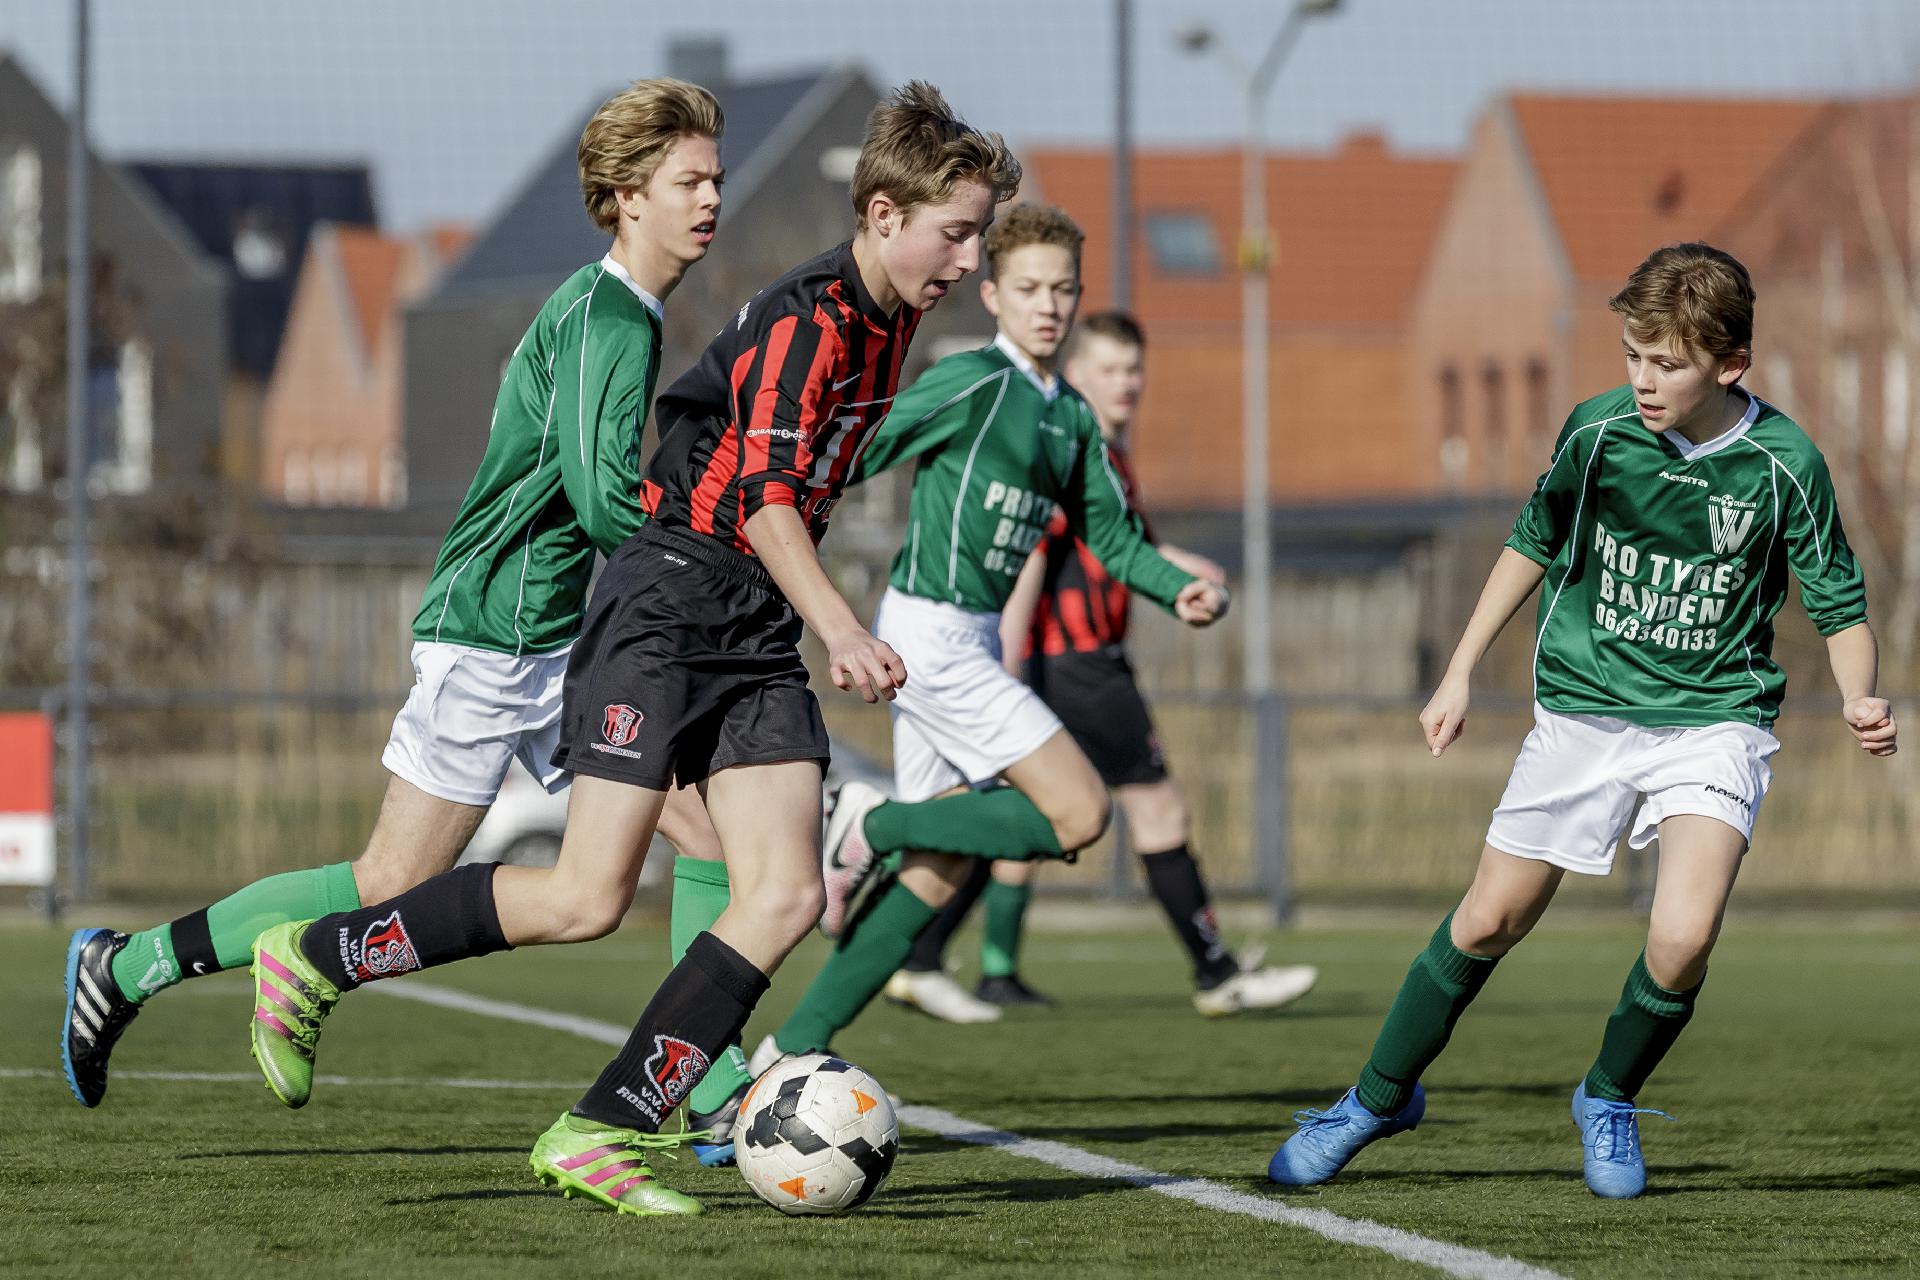 Oefenwedstrijden toevoegen aan Voetbal.nl via Sportlink Club